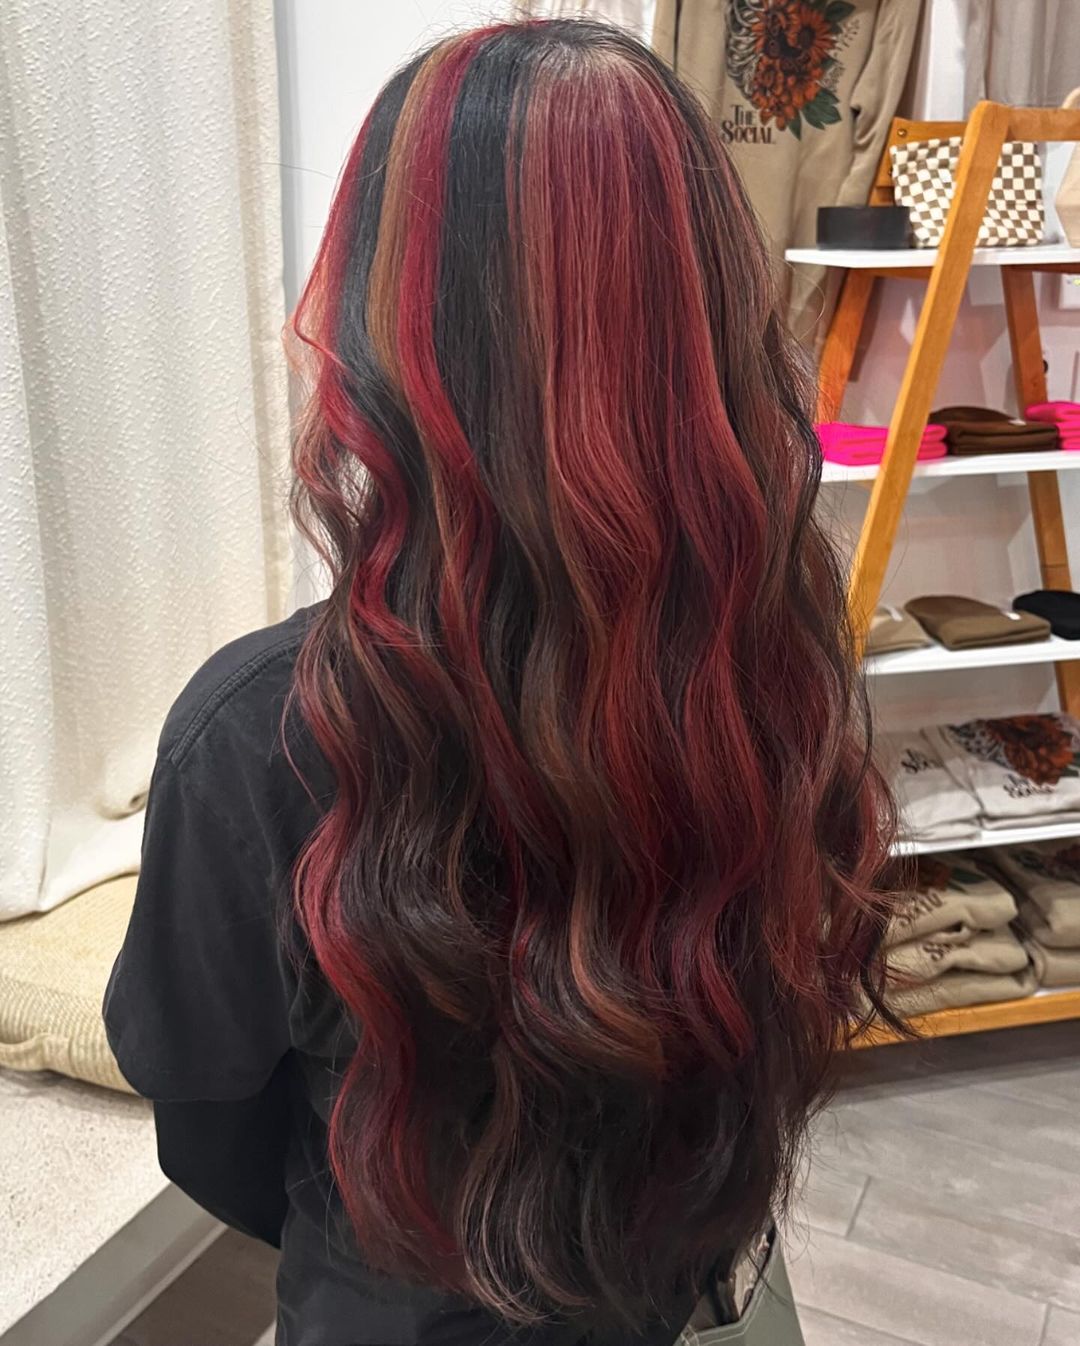 pelo rojo y negro